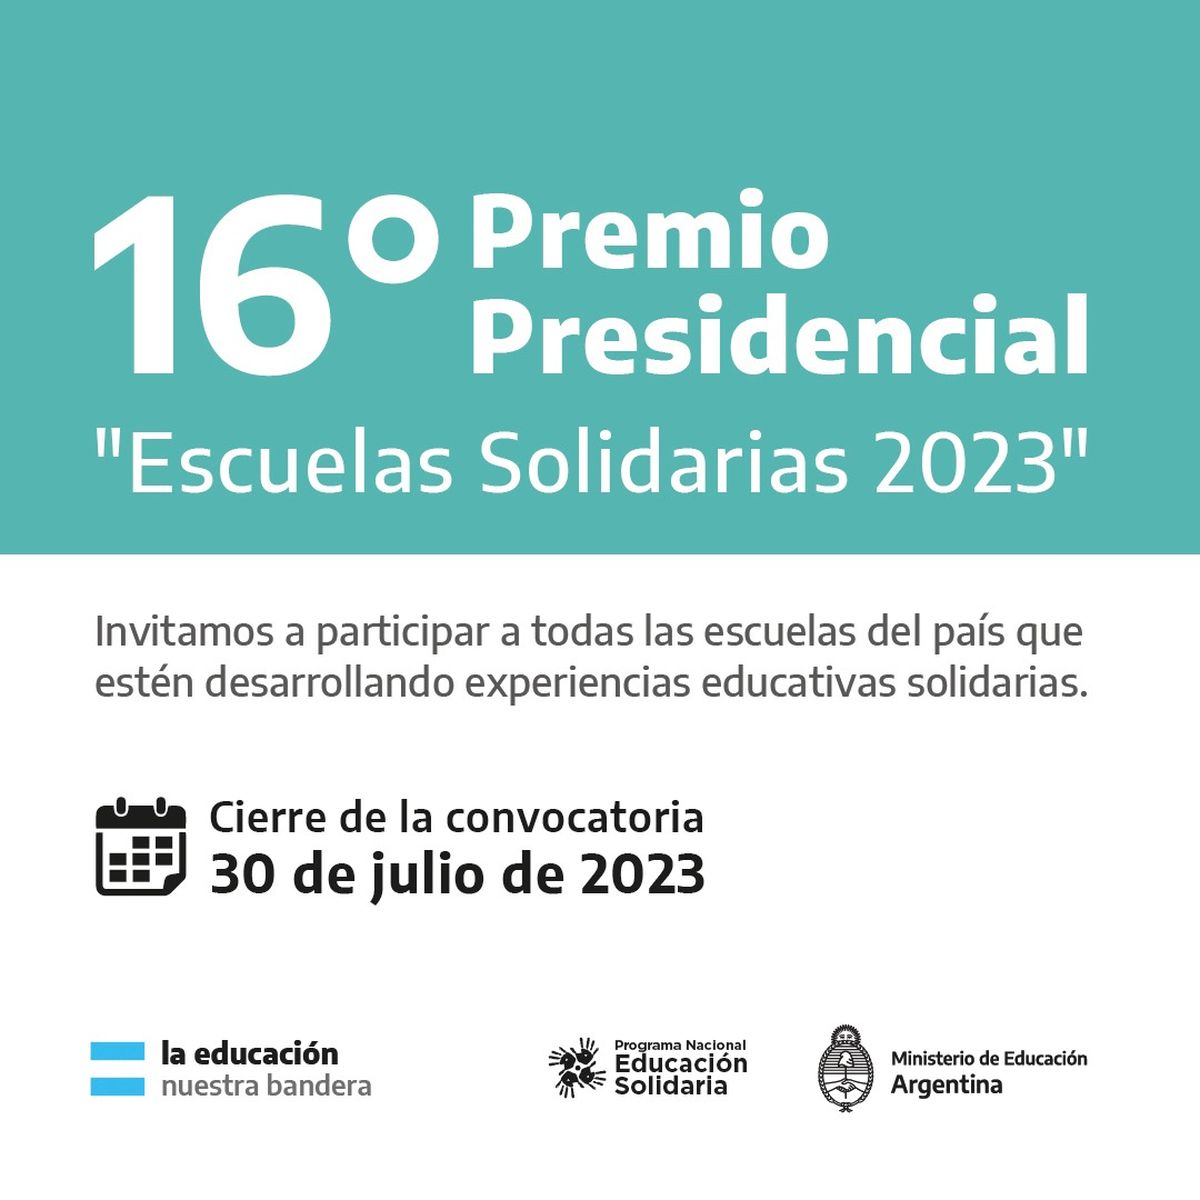 Convocatoria para la 16° Edición Premio Presidencial -Escuelas Solidarias 2023